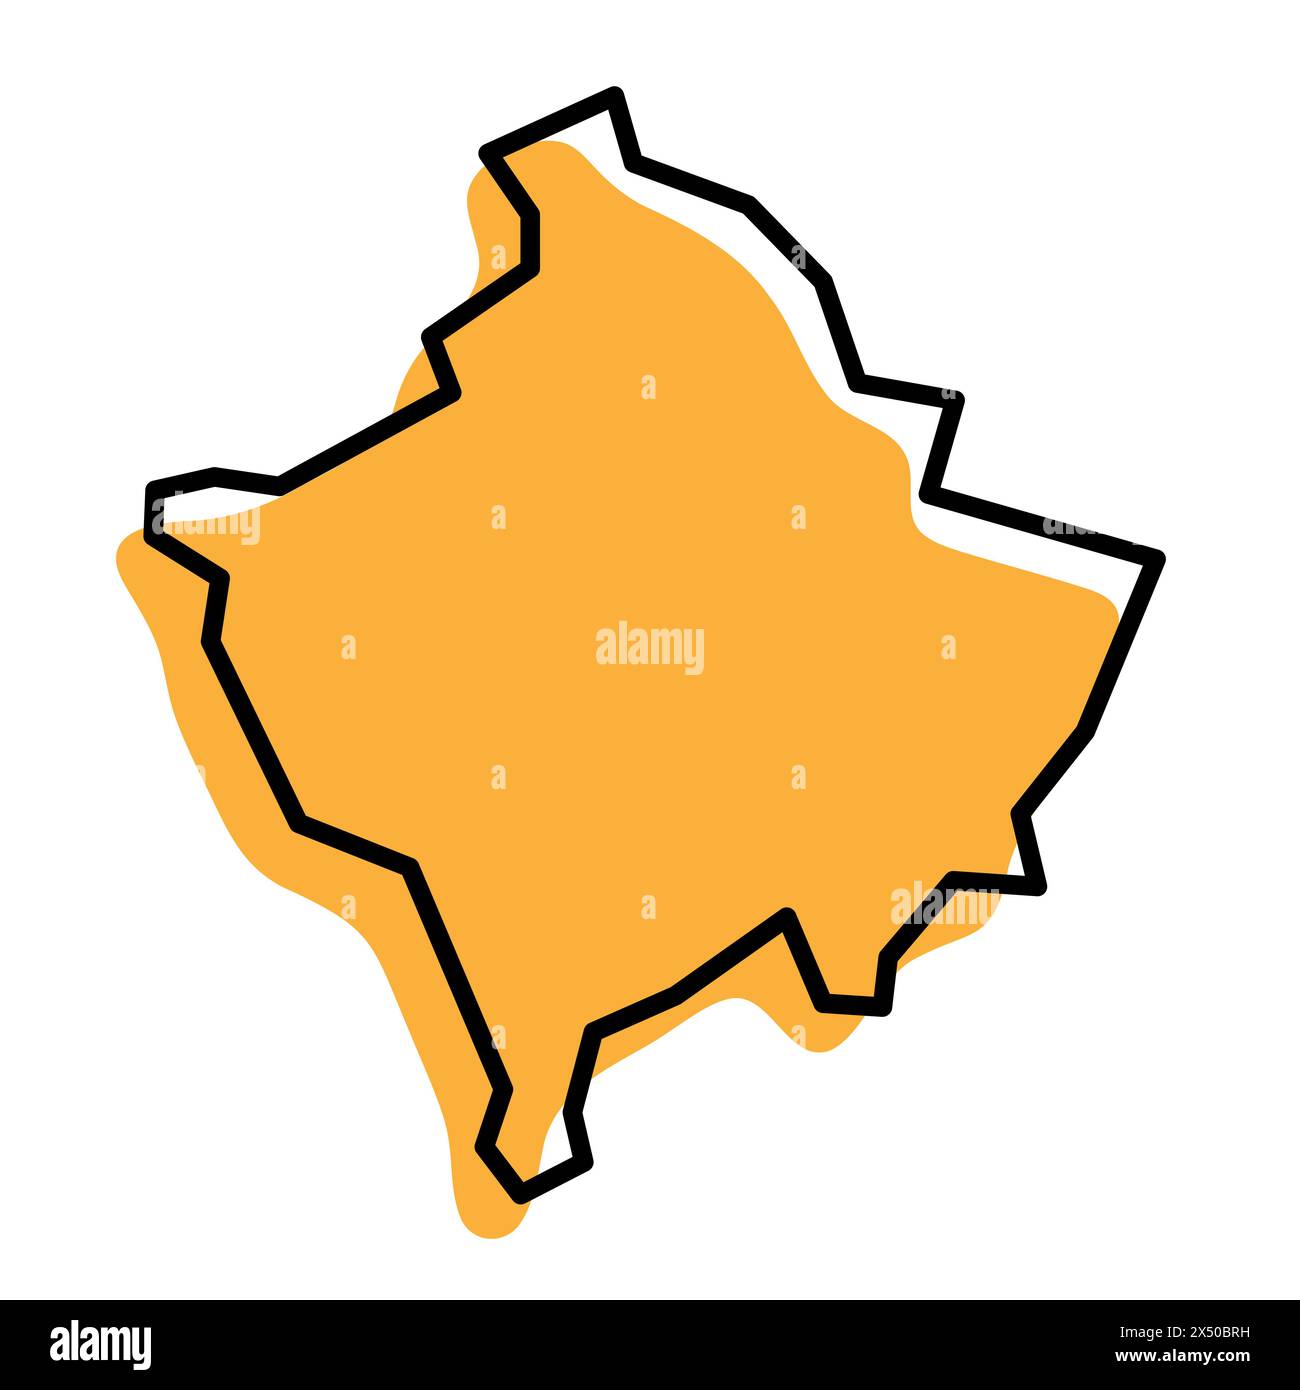 Mappa semplificata del paese del Kosovo. Silhouette arancione con contorni netti neri spessi isolati su sfondo bianco. Semplice icona vettoriale Illustrazione Vettoriale